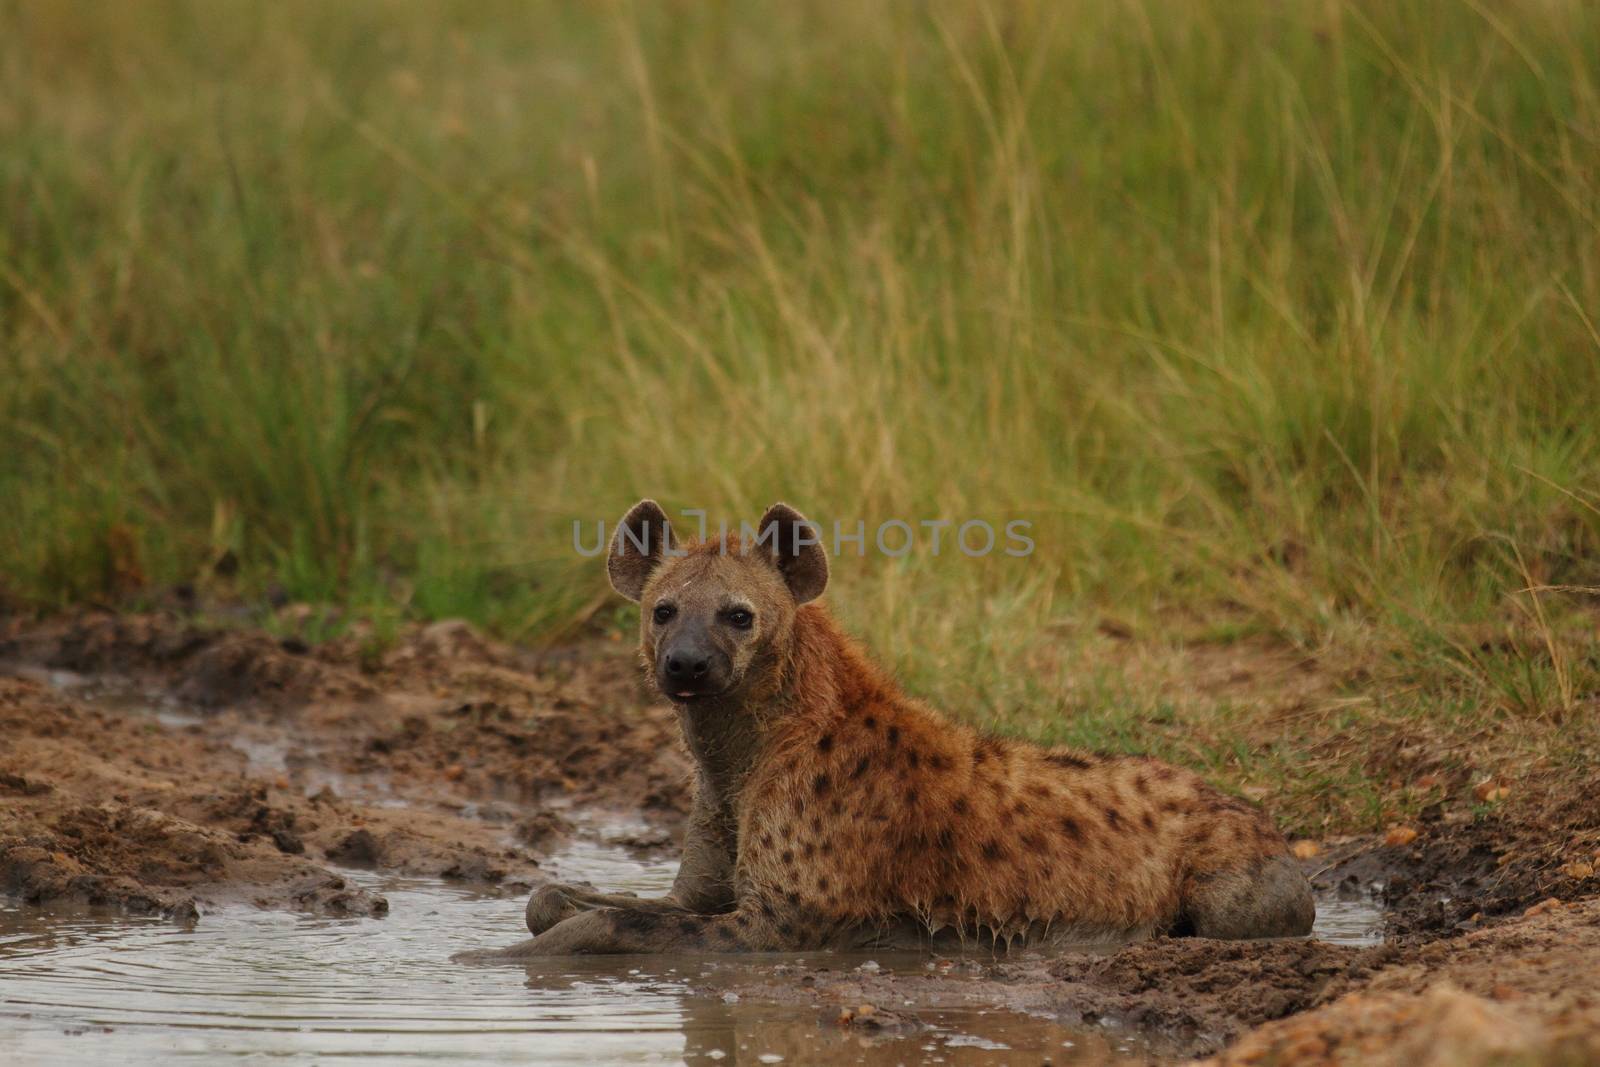 Hyena in the wilderness by ozkanzozmen